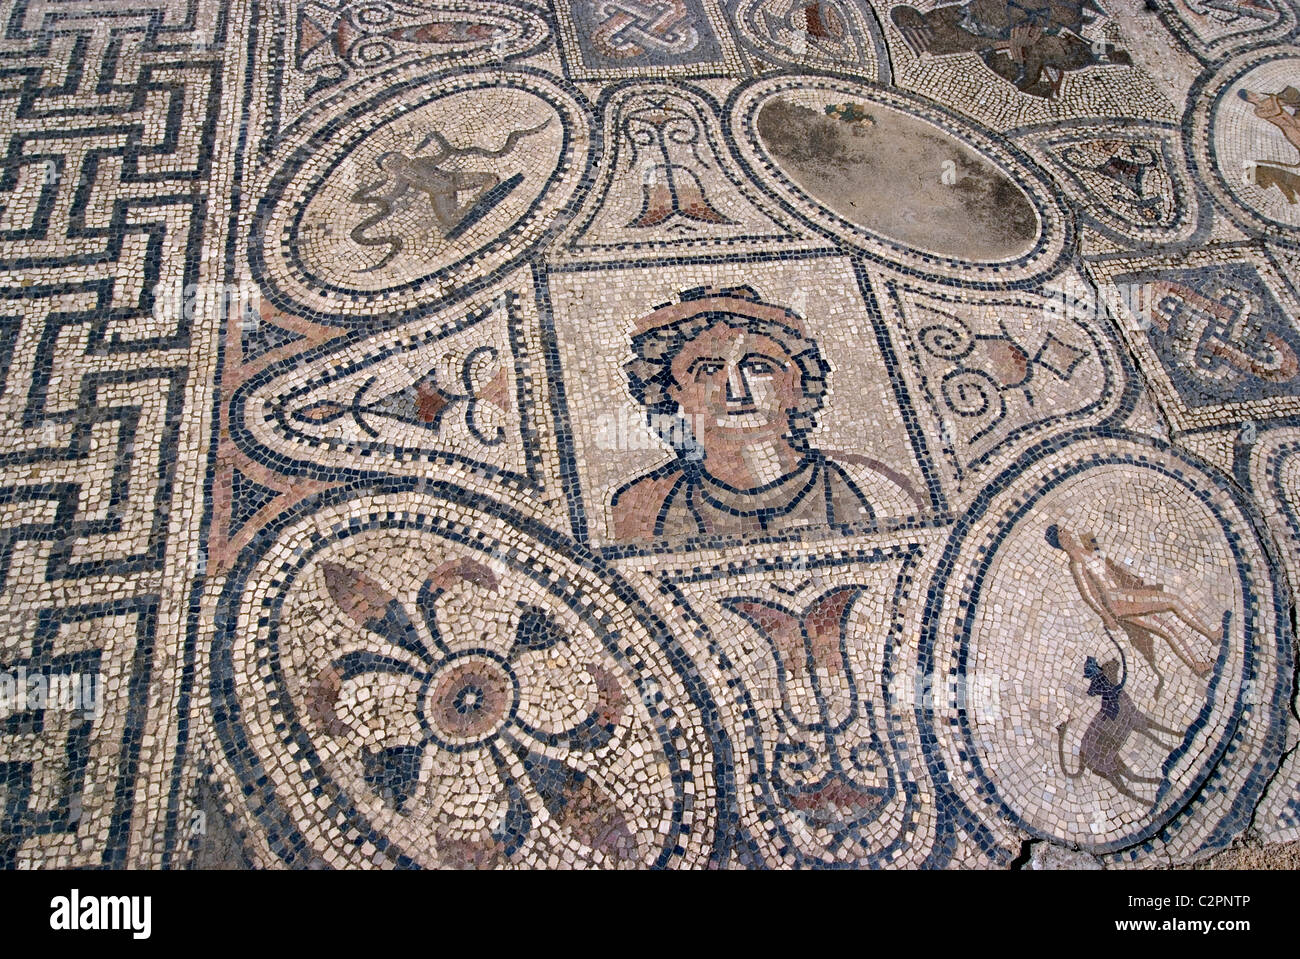 Travaux d'Hercule, Mosaic House, numide, site romain de Volubilis, près de Meknes, Maroc Banque D'Images